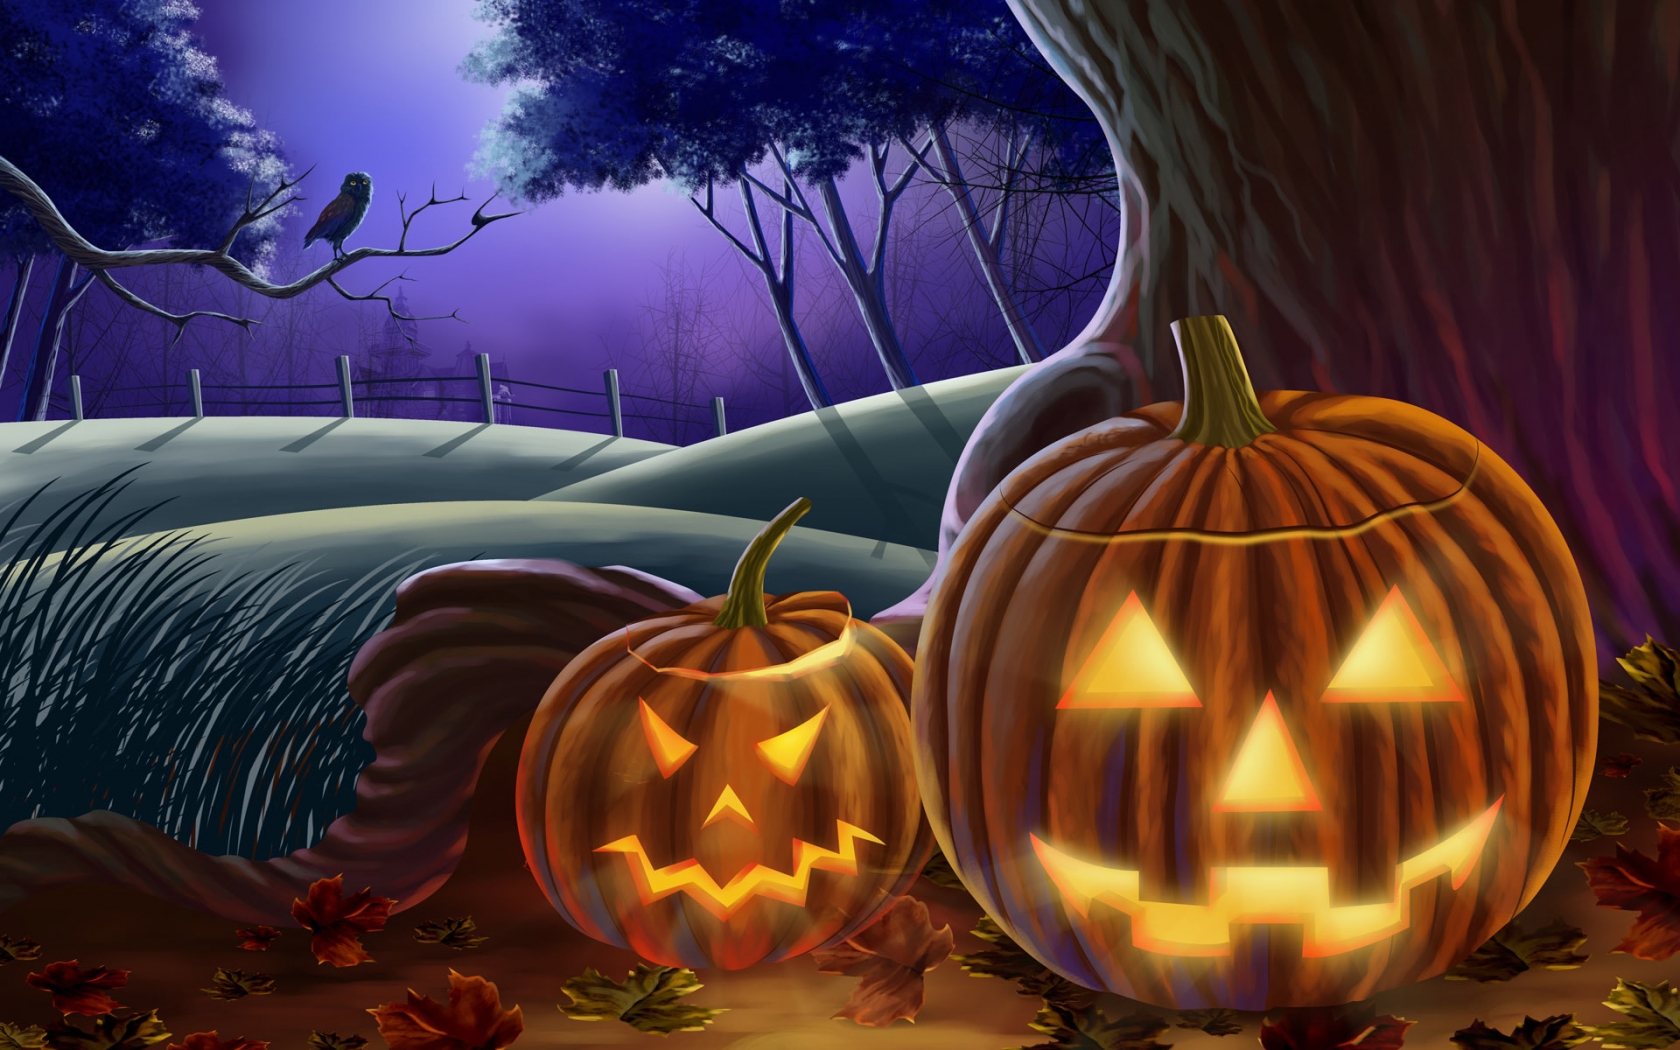 Illuminated Pumpkins for Halloween for 1680 x 1050 widescreen resolution